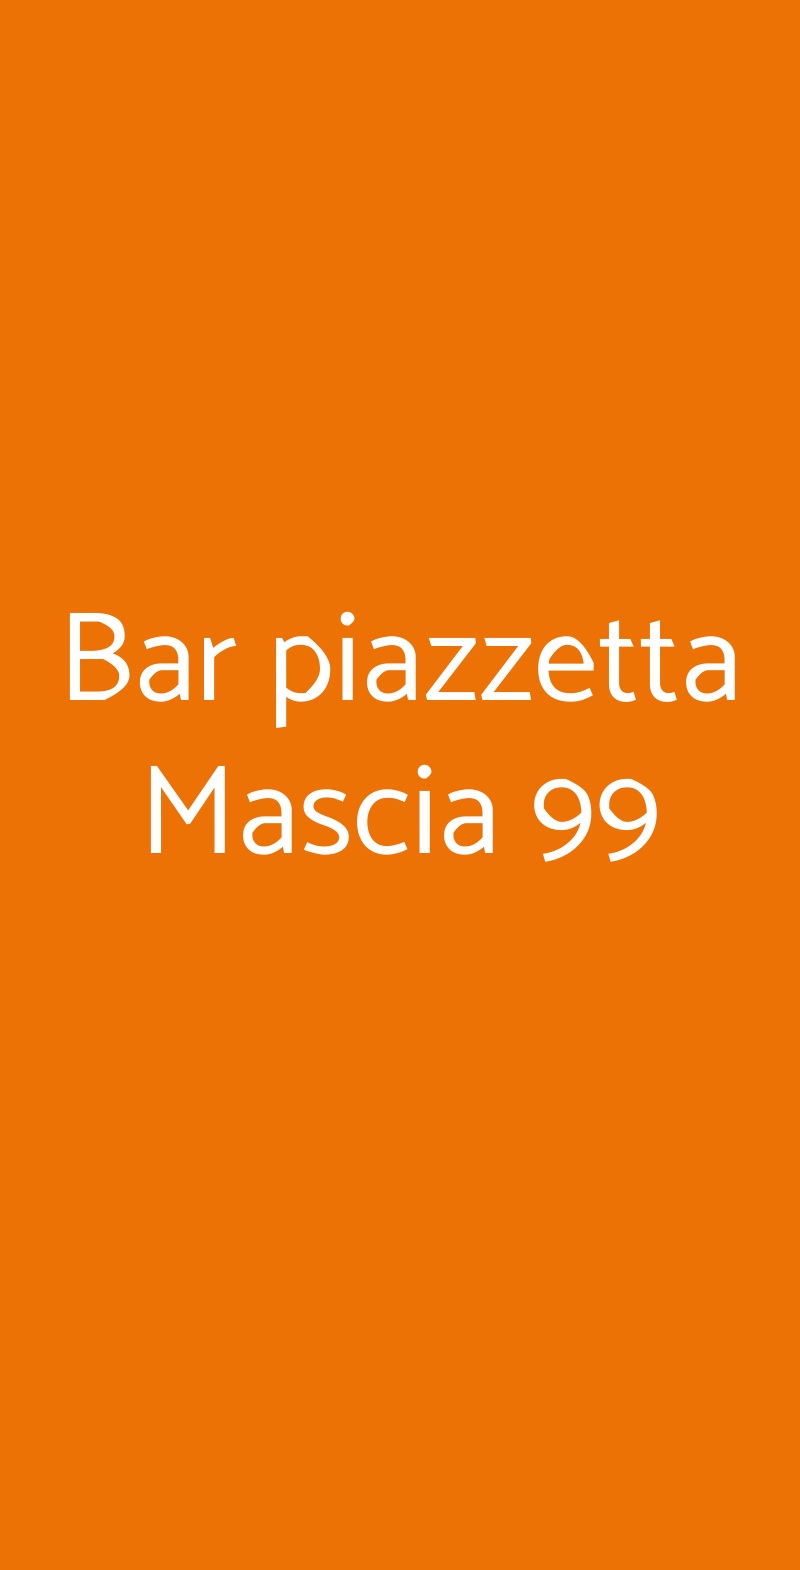 Bar piazzetta Mascia 99 Cagliari menù 1 pagina